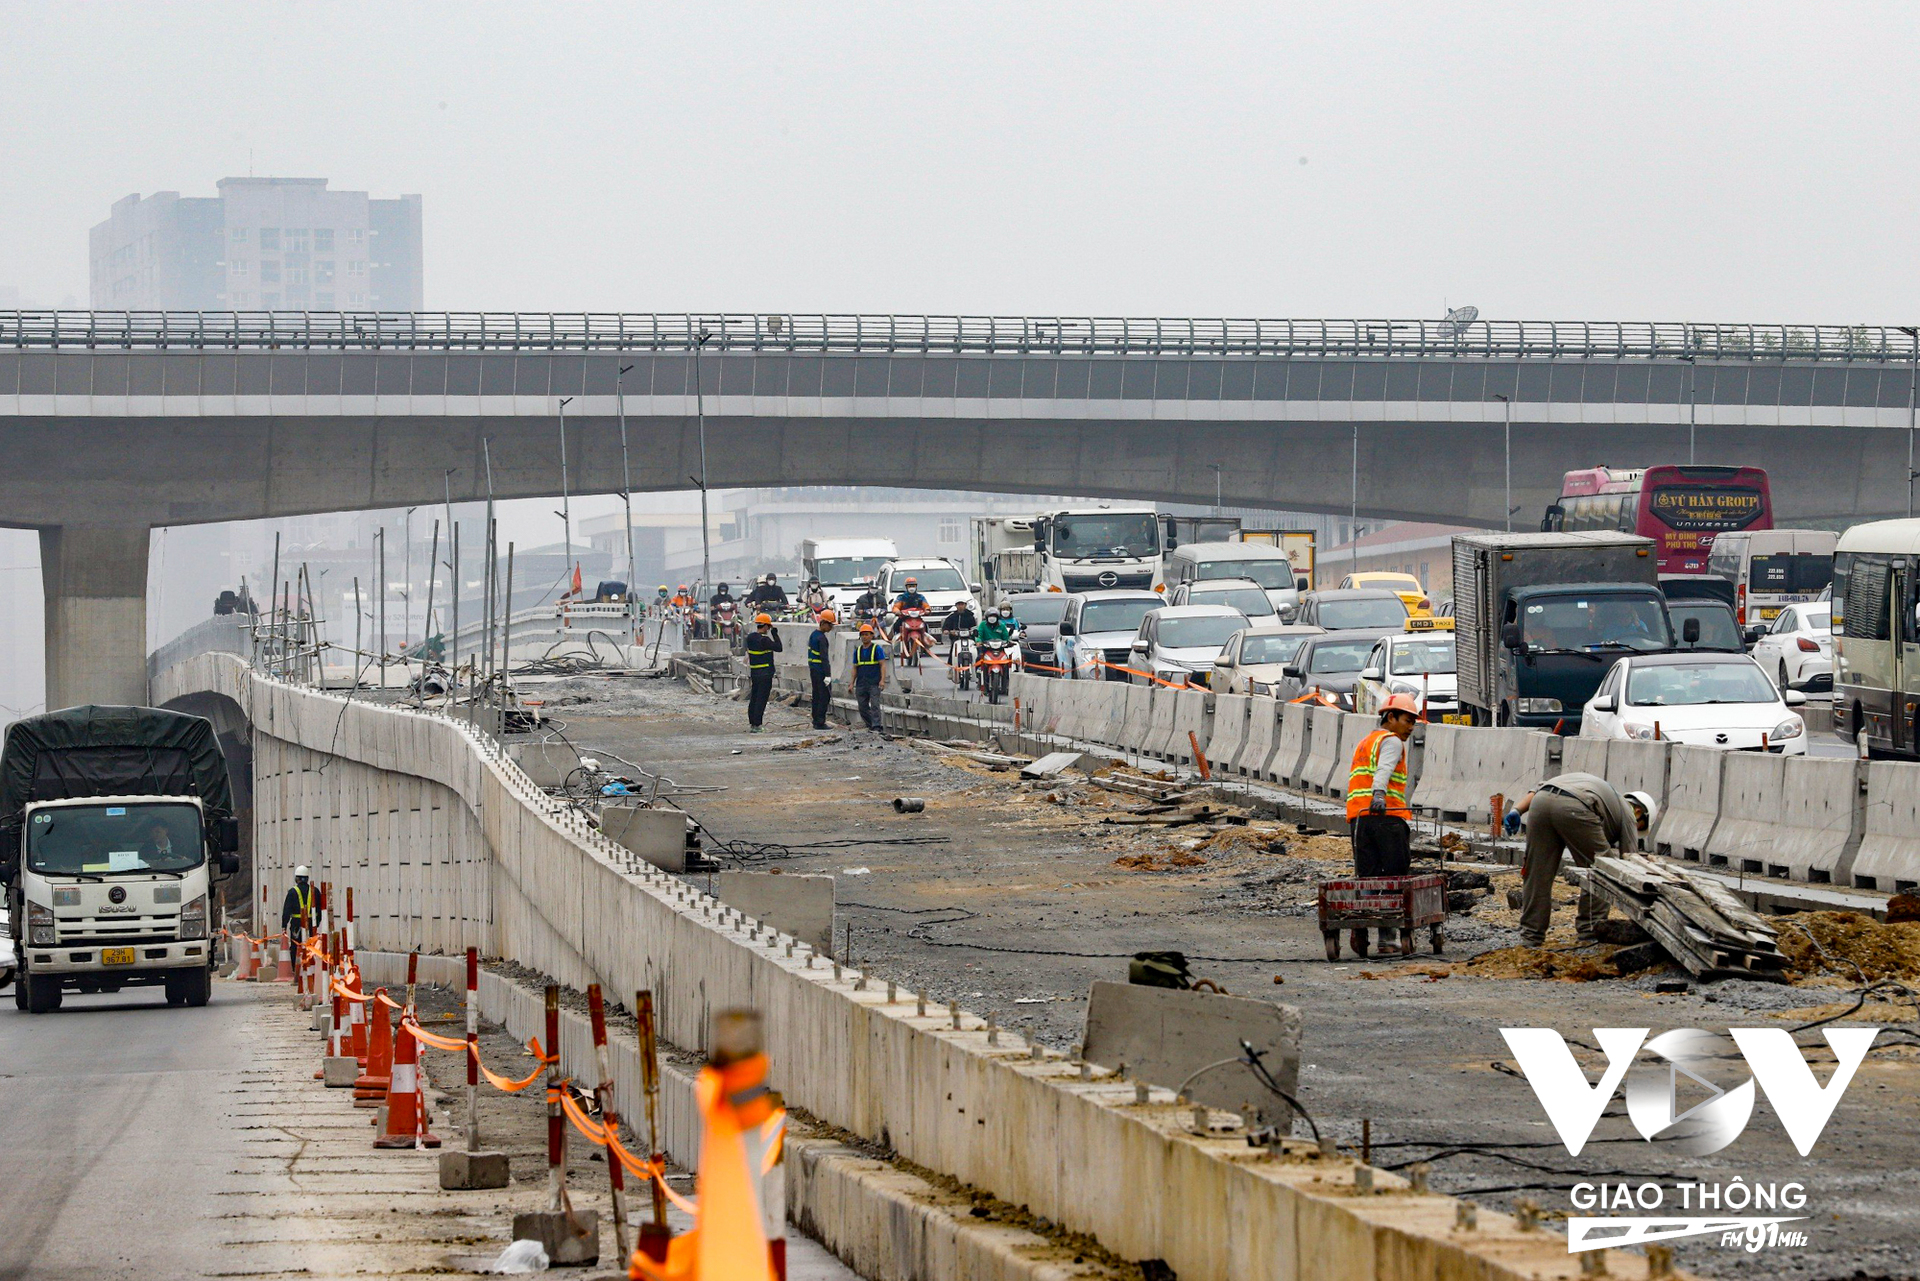 Theo phương án được phê duyệt, mỗi bên cầu vượt Mai Dịch sẽ được xây dựng một đơn nguyên cầu đô thị rộng 7,75m gồm một làn xe cơ giới (3,5m) và một làn xe hỗn hợp (3m), còn lại là dải an toàn và bó vỉa.